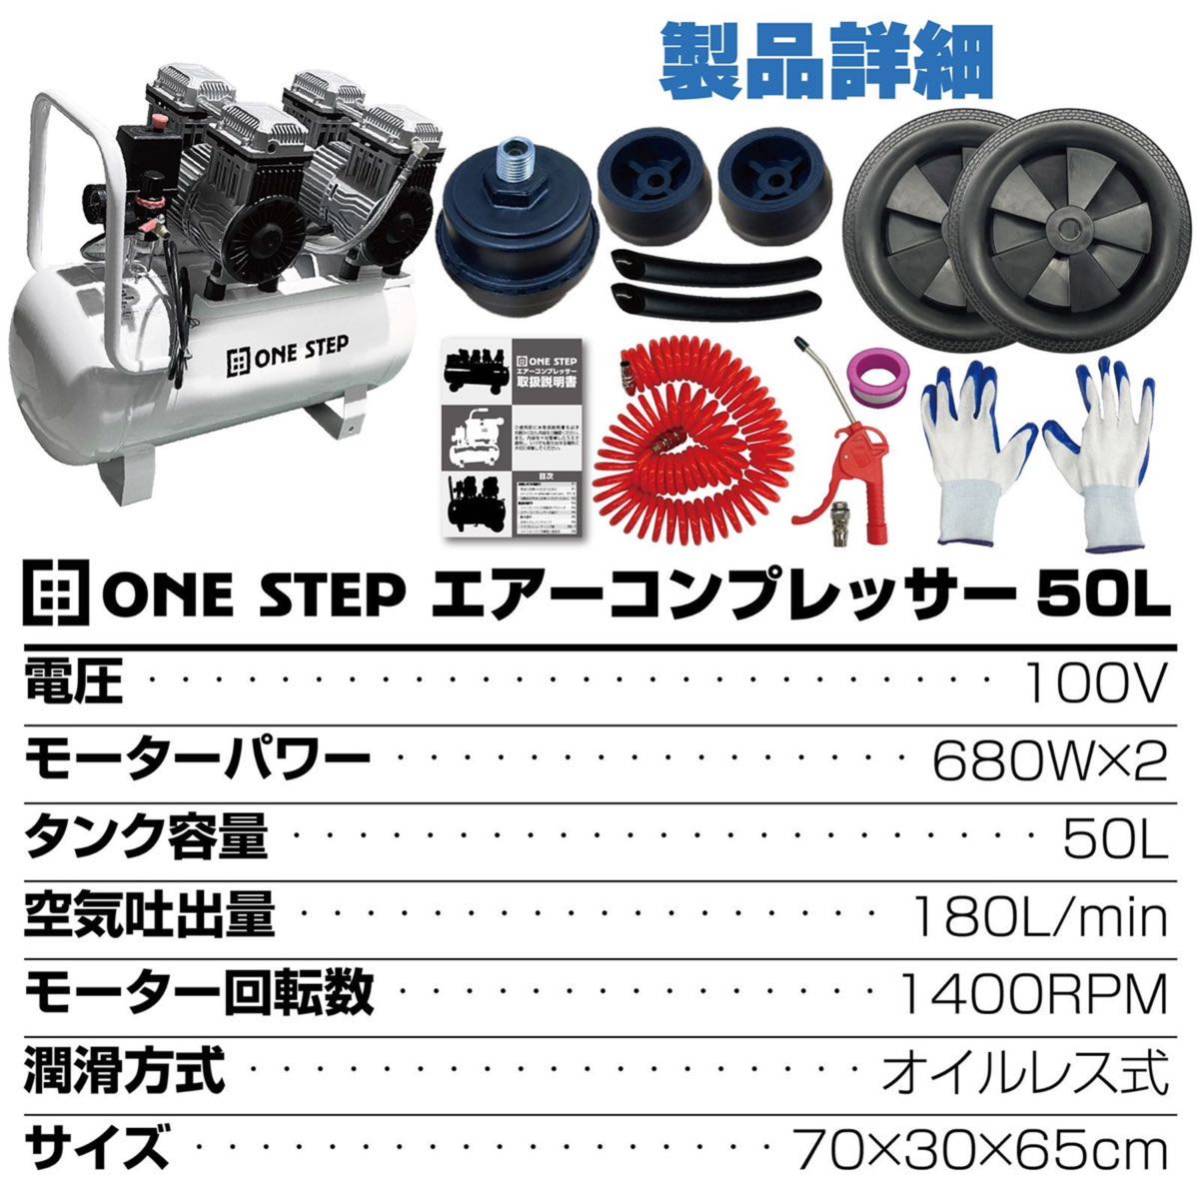 オイルレス エアーコンプレッサー 低騒音 大口径 ツールセット付 (50L)-